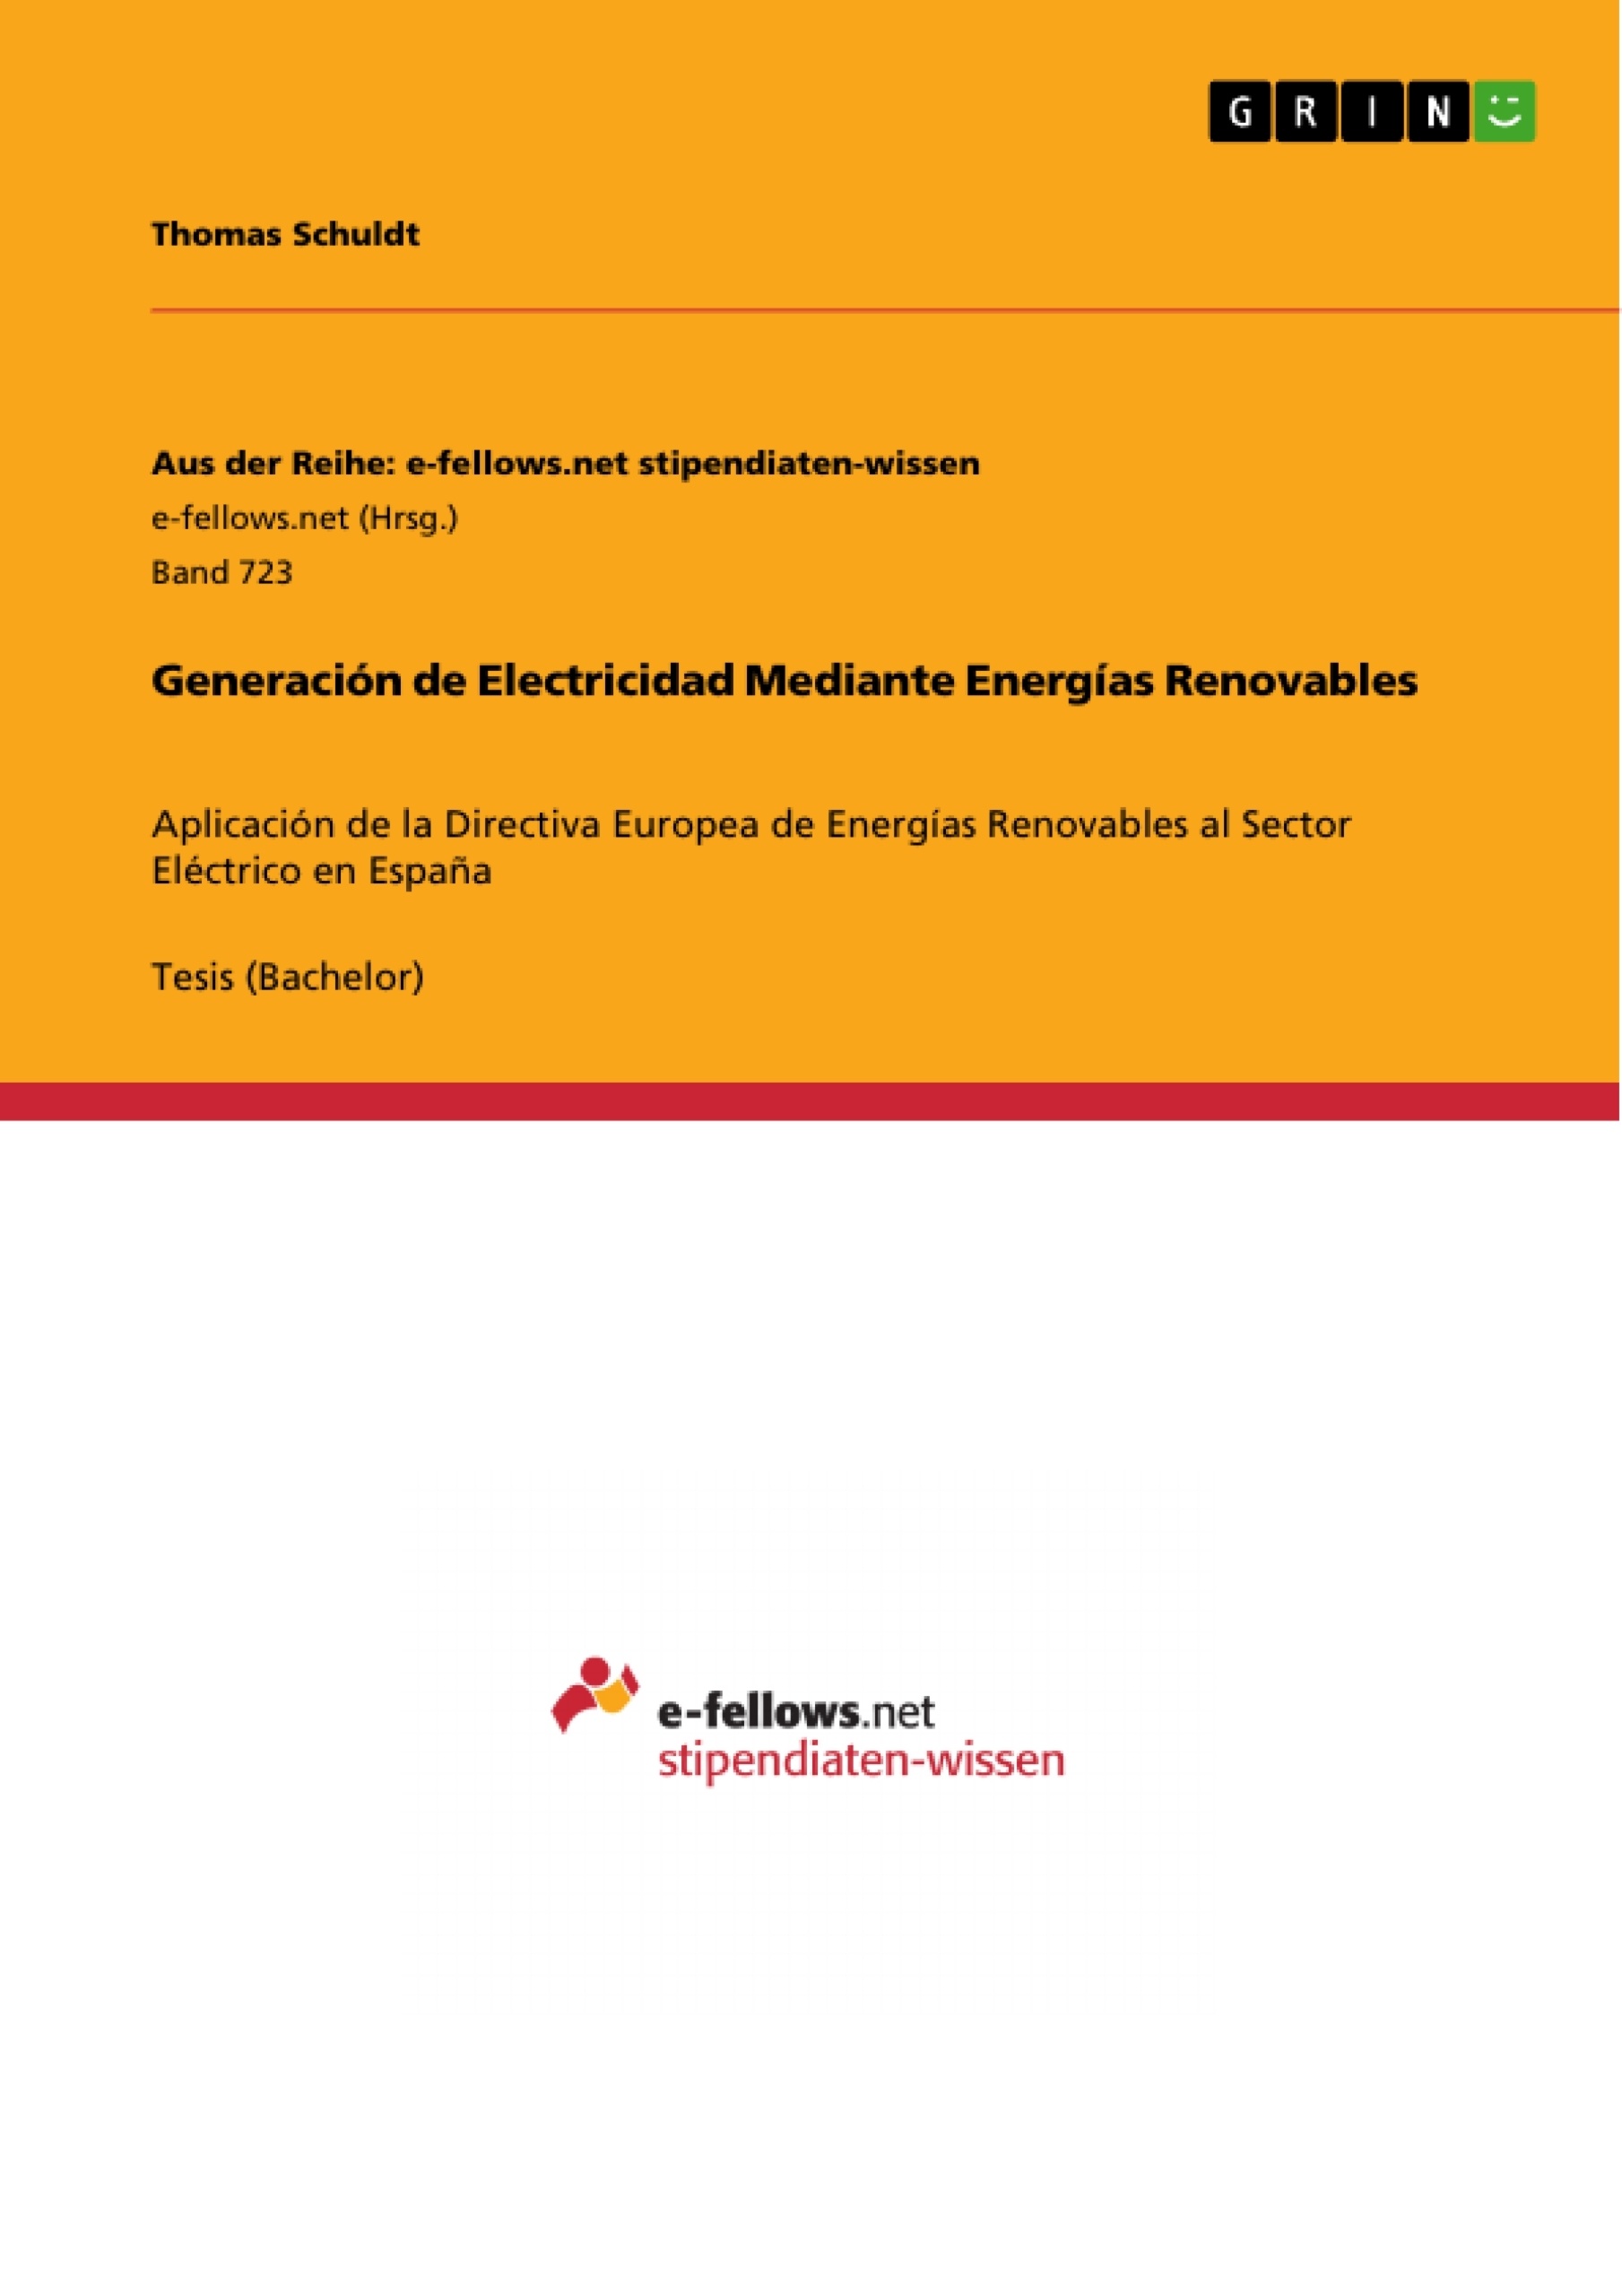 Título: Generación de Electricidad Mediante Energías Renovables